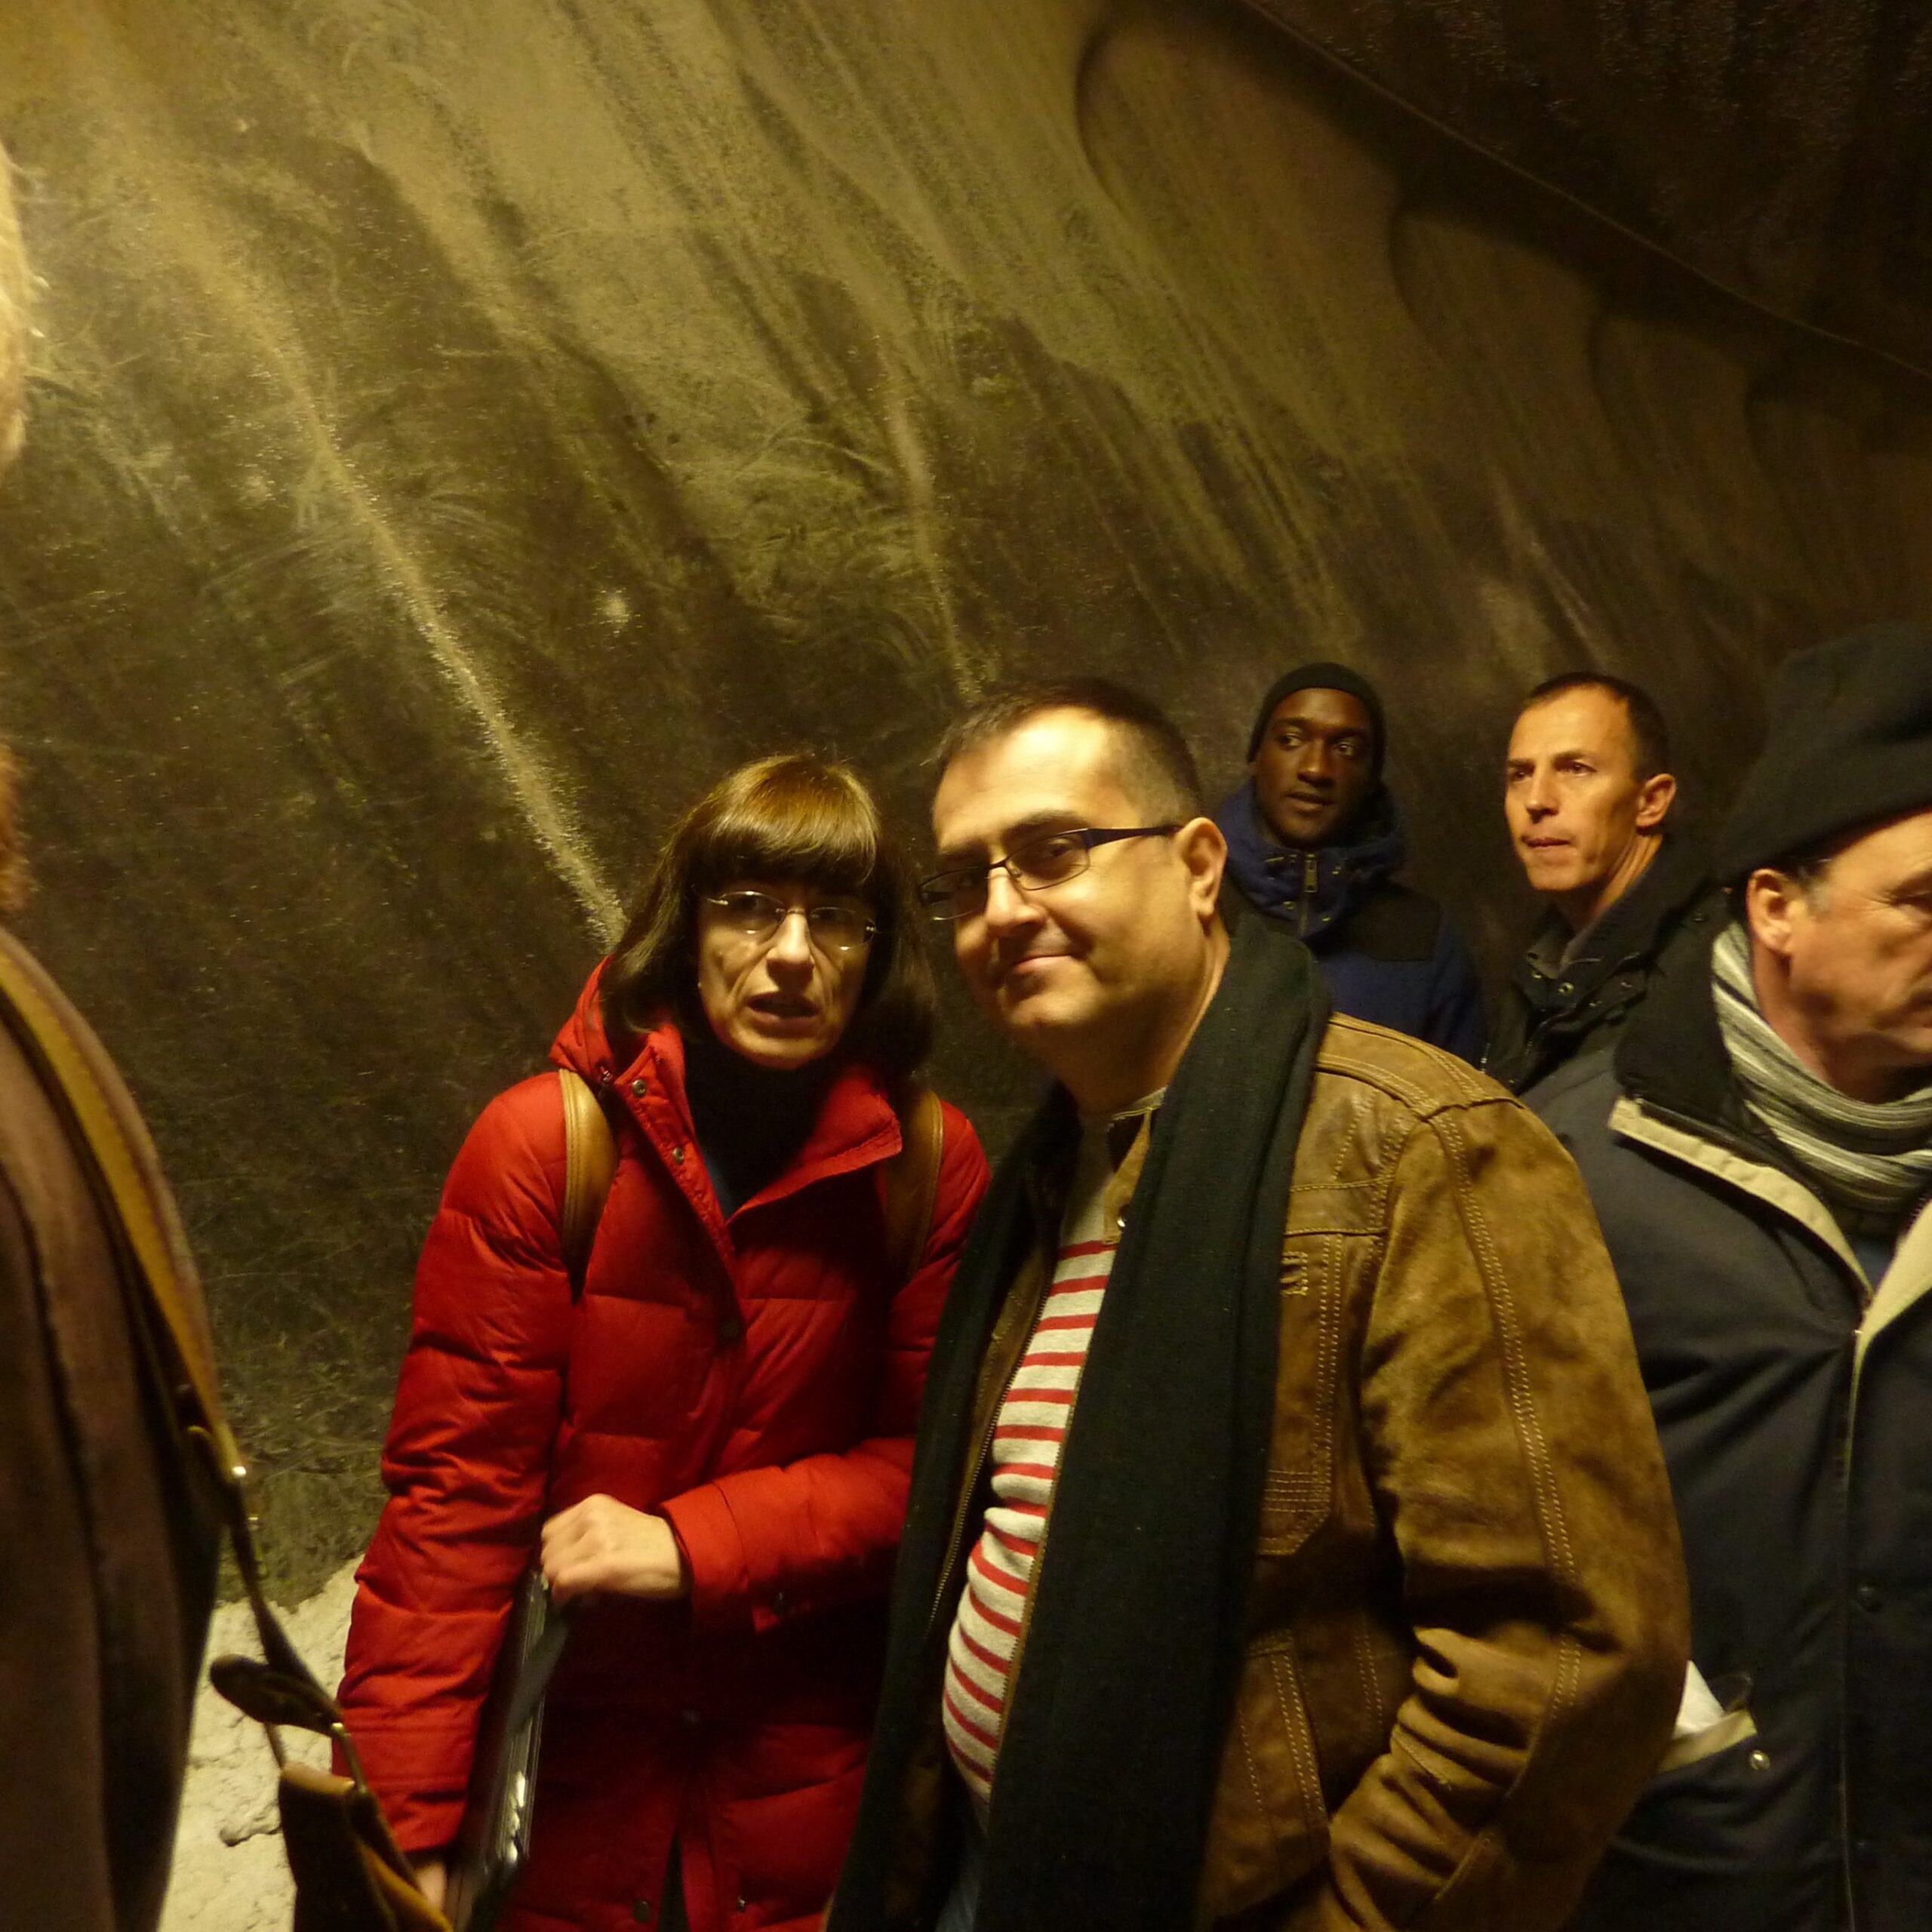 Interpreting for Owens at the Turda Salt Mine, Romania in 2013.